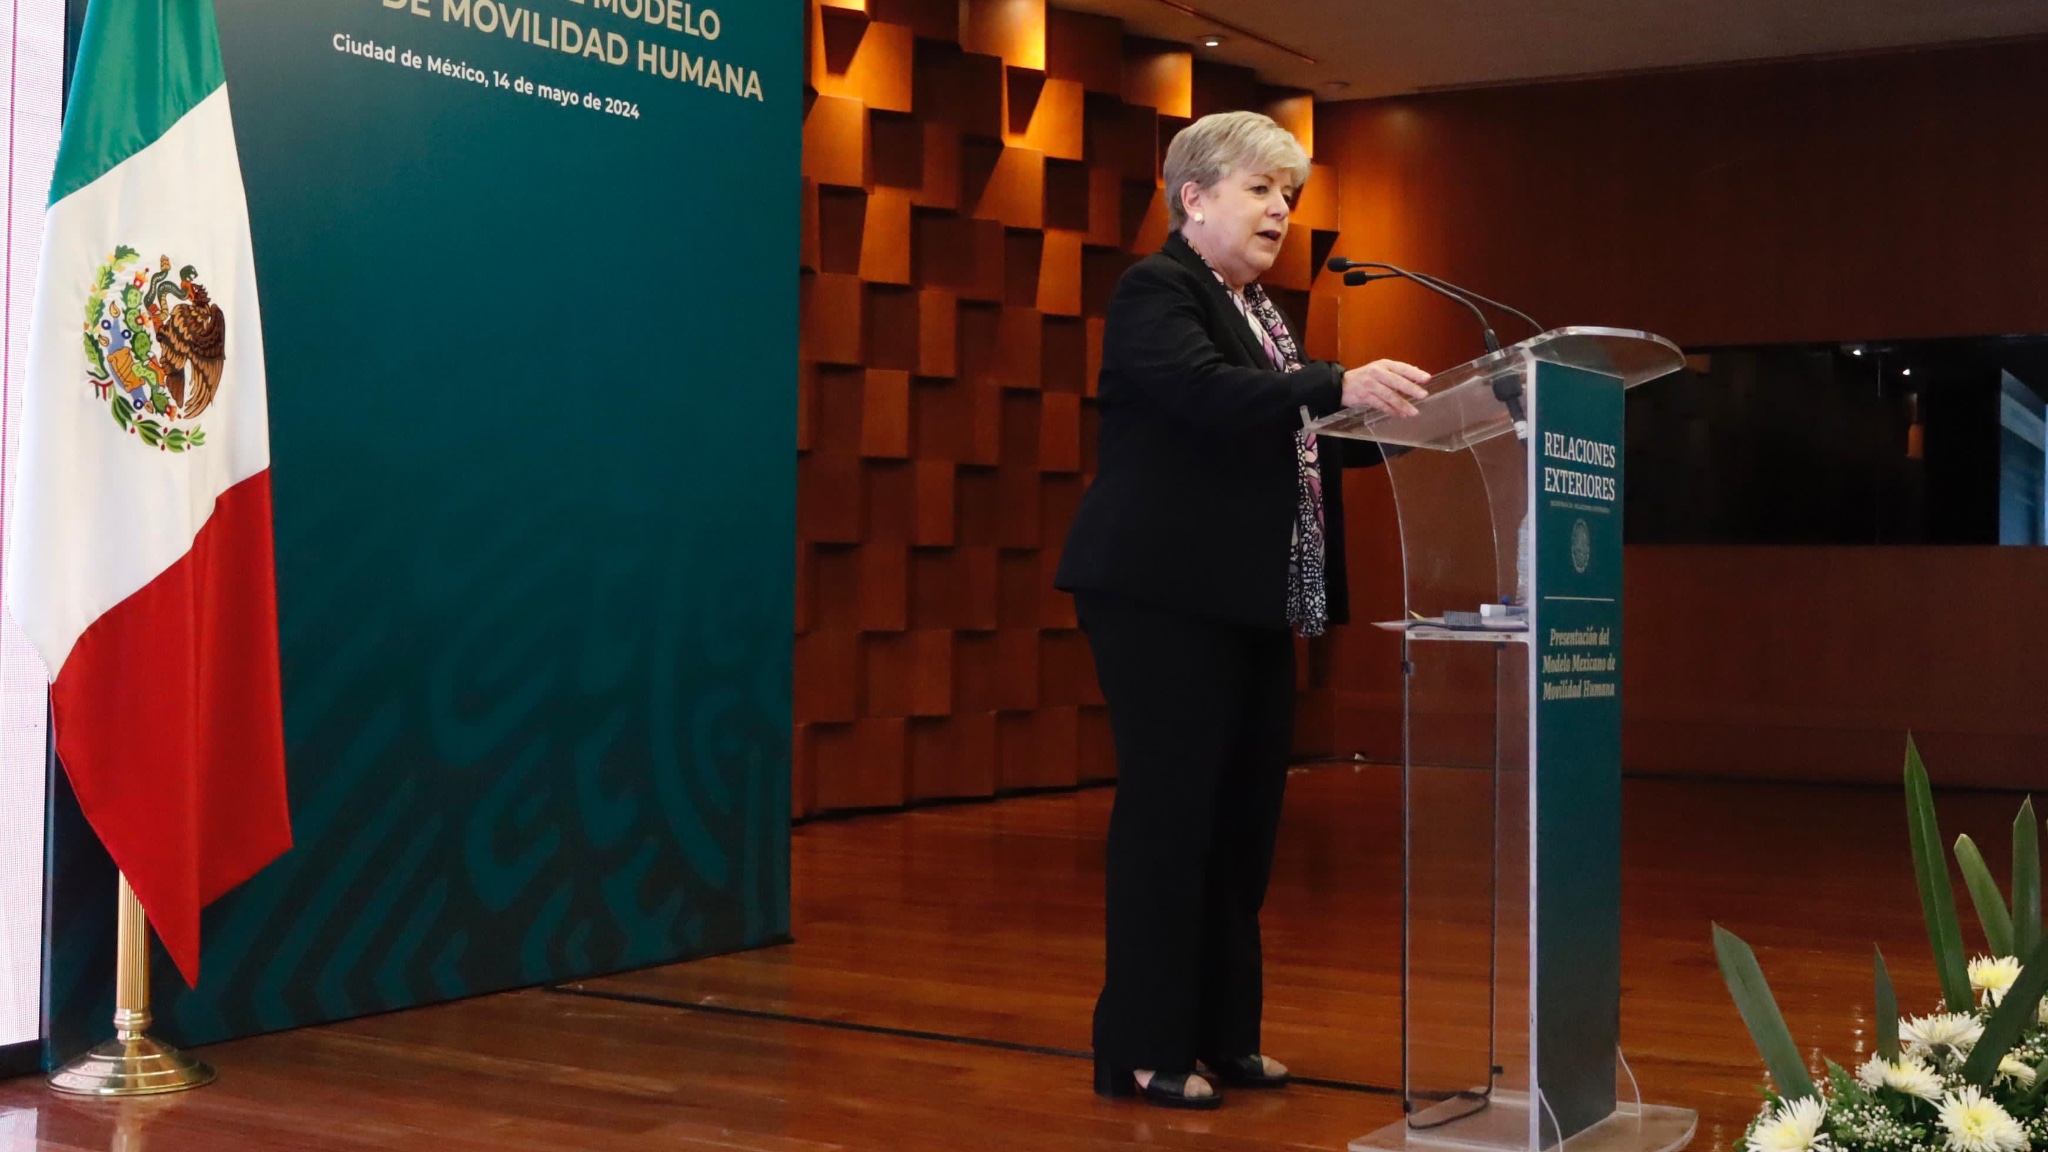 Presentó Alicia Bárcena los 4 pilares de la política migratoria que forman parte del Modelo Mexicano de Movilidad Humana